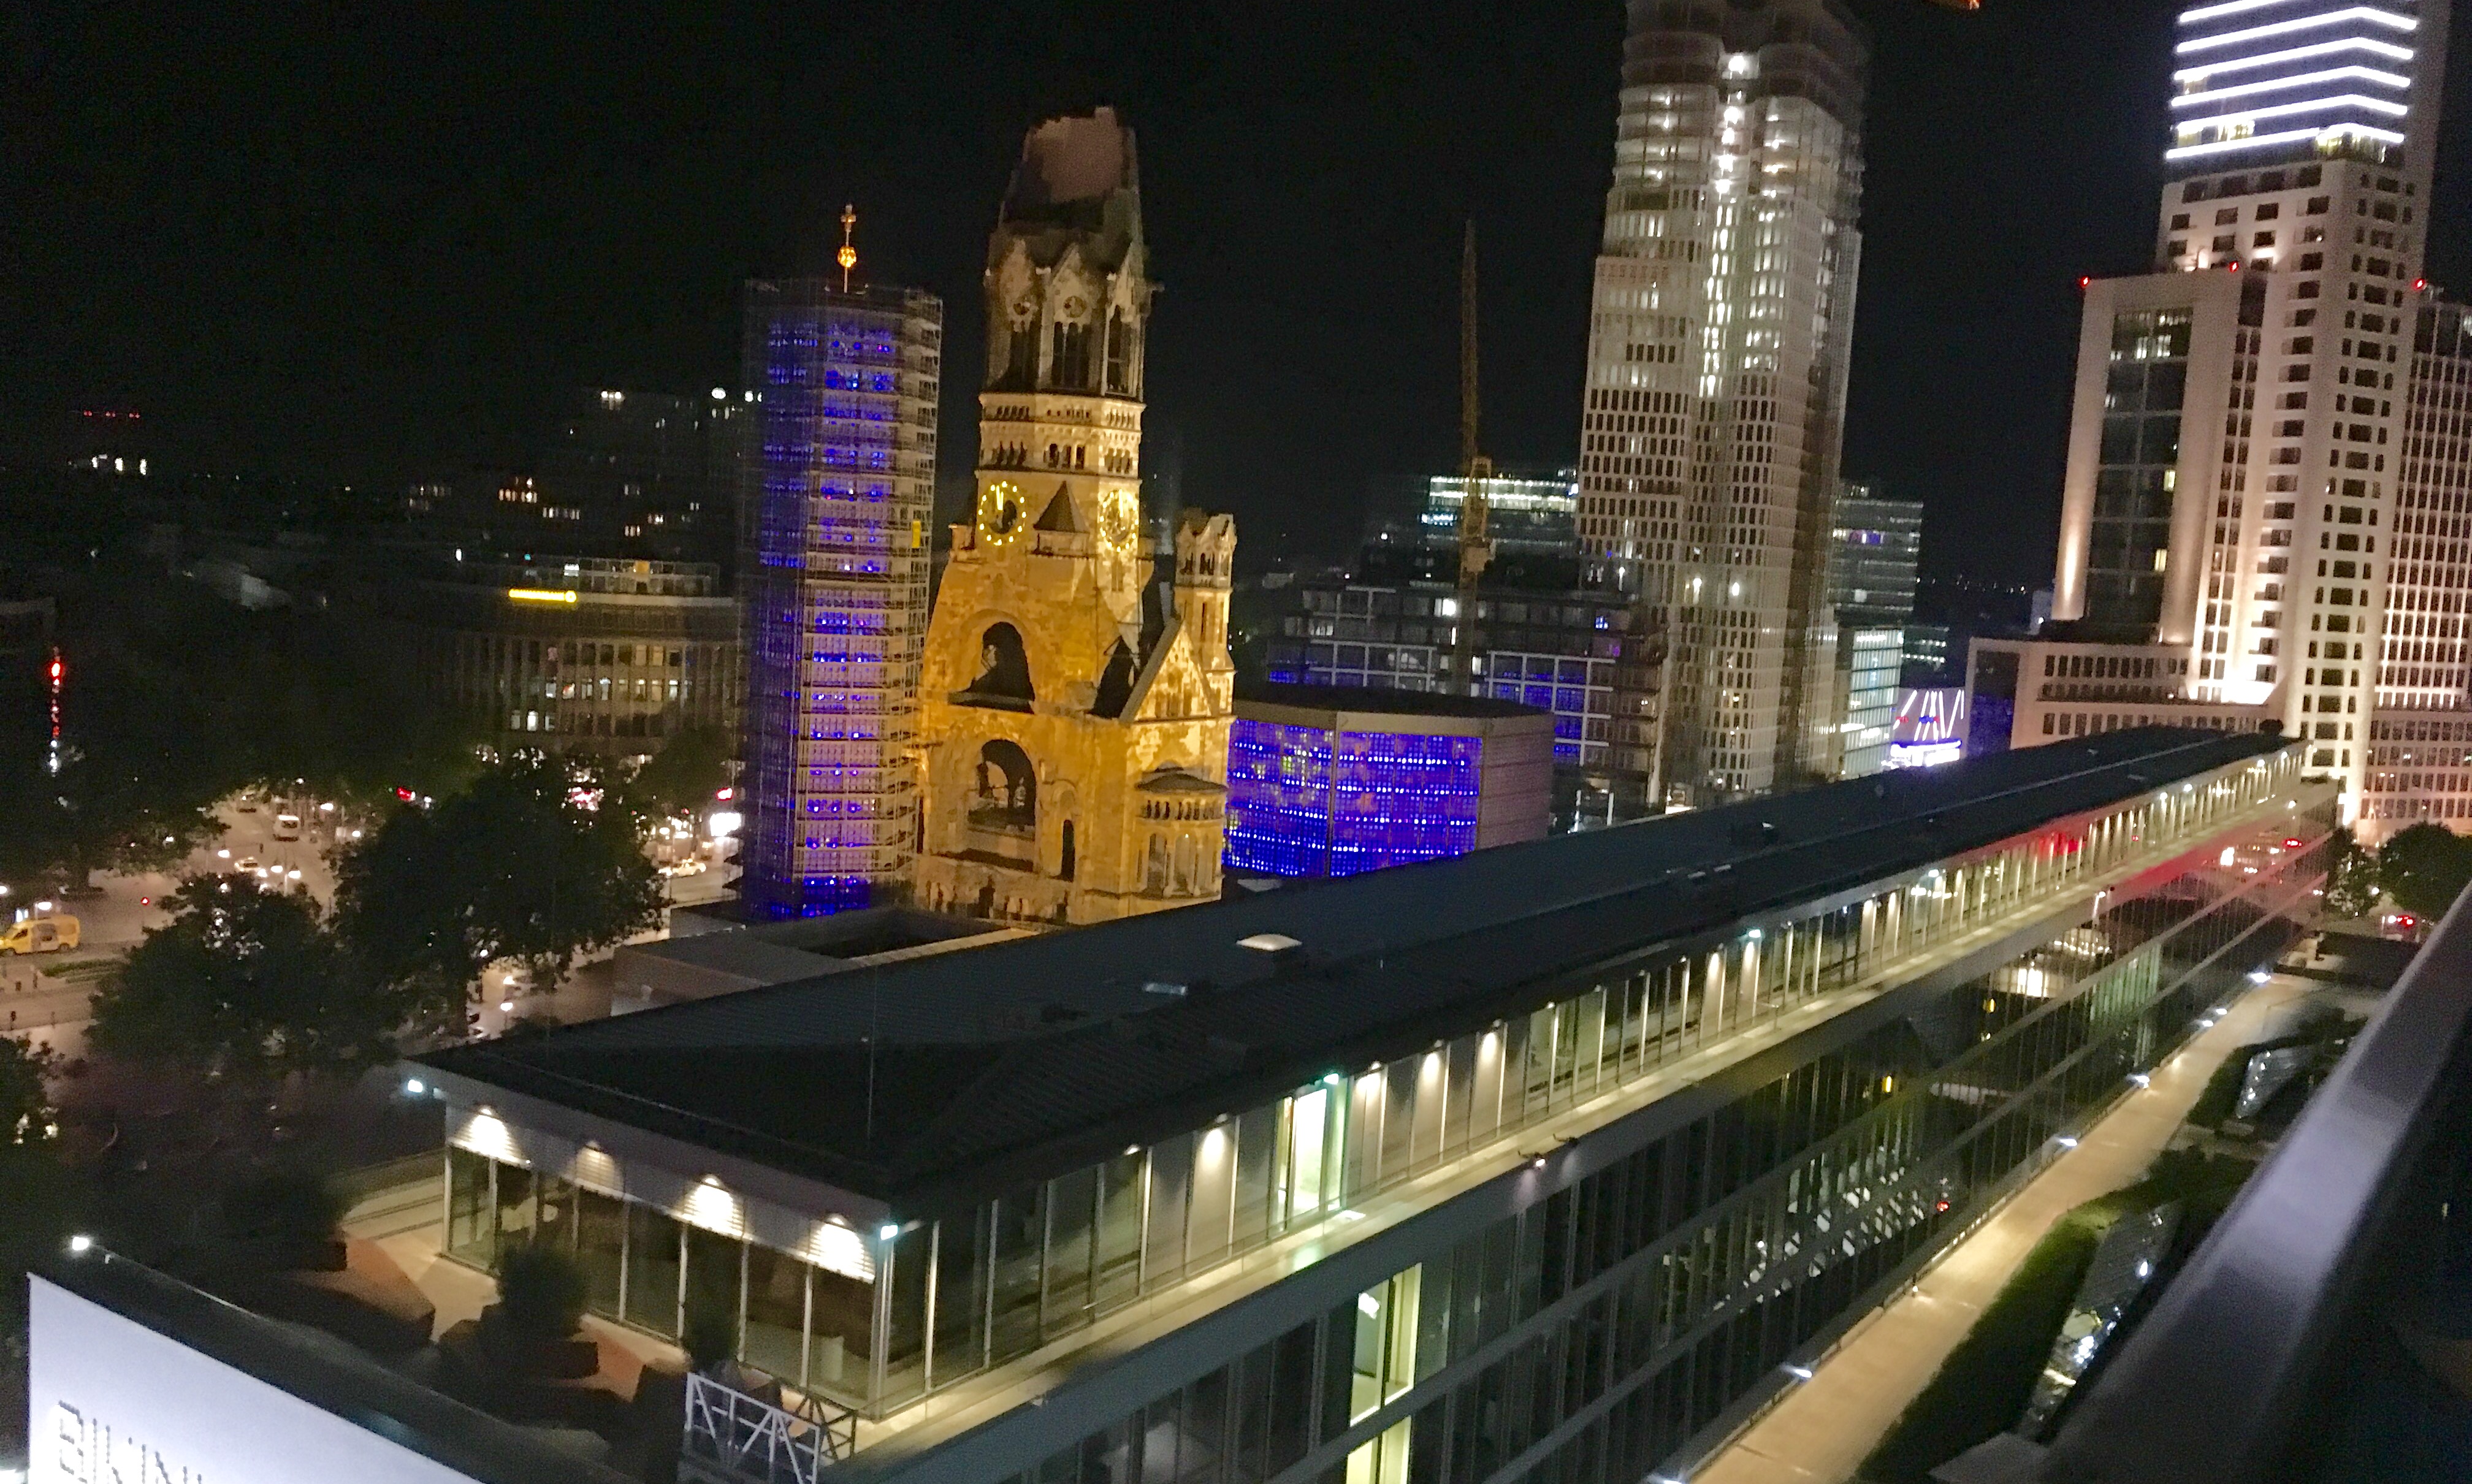 Berlin view